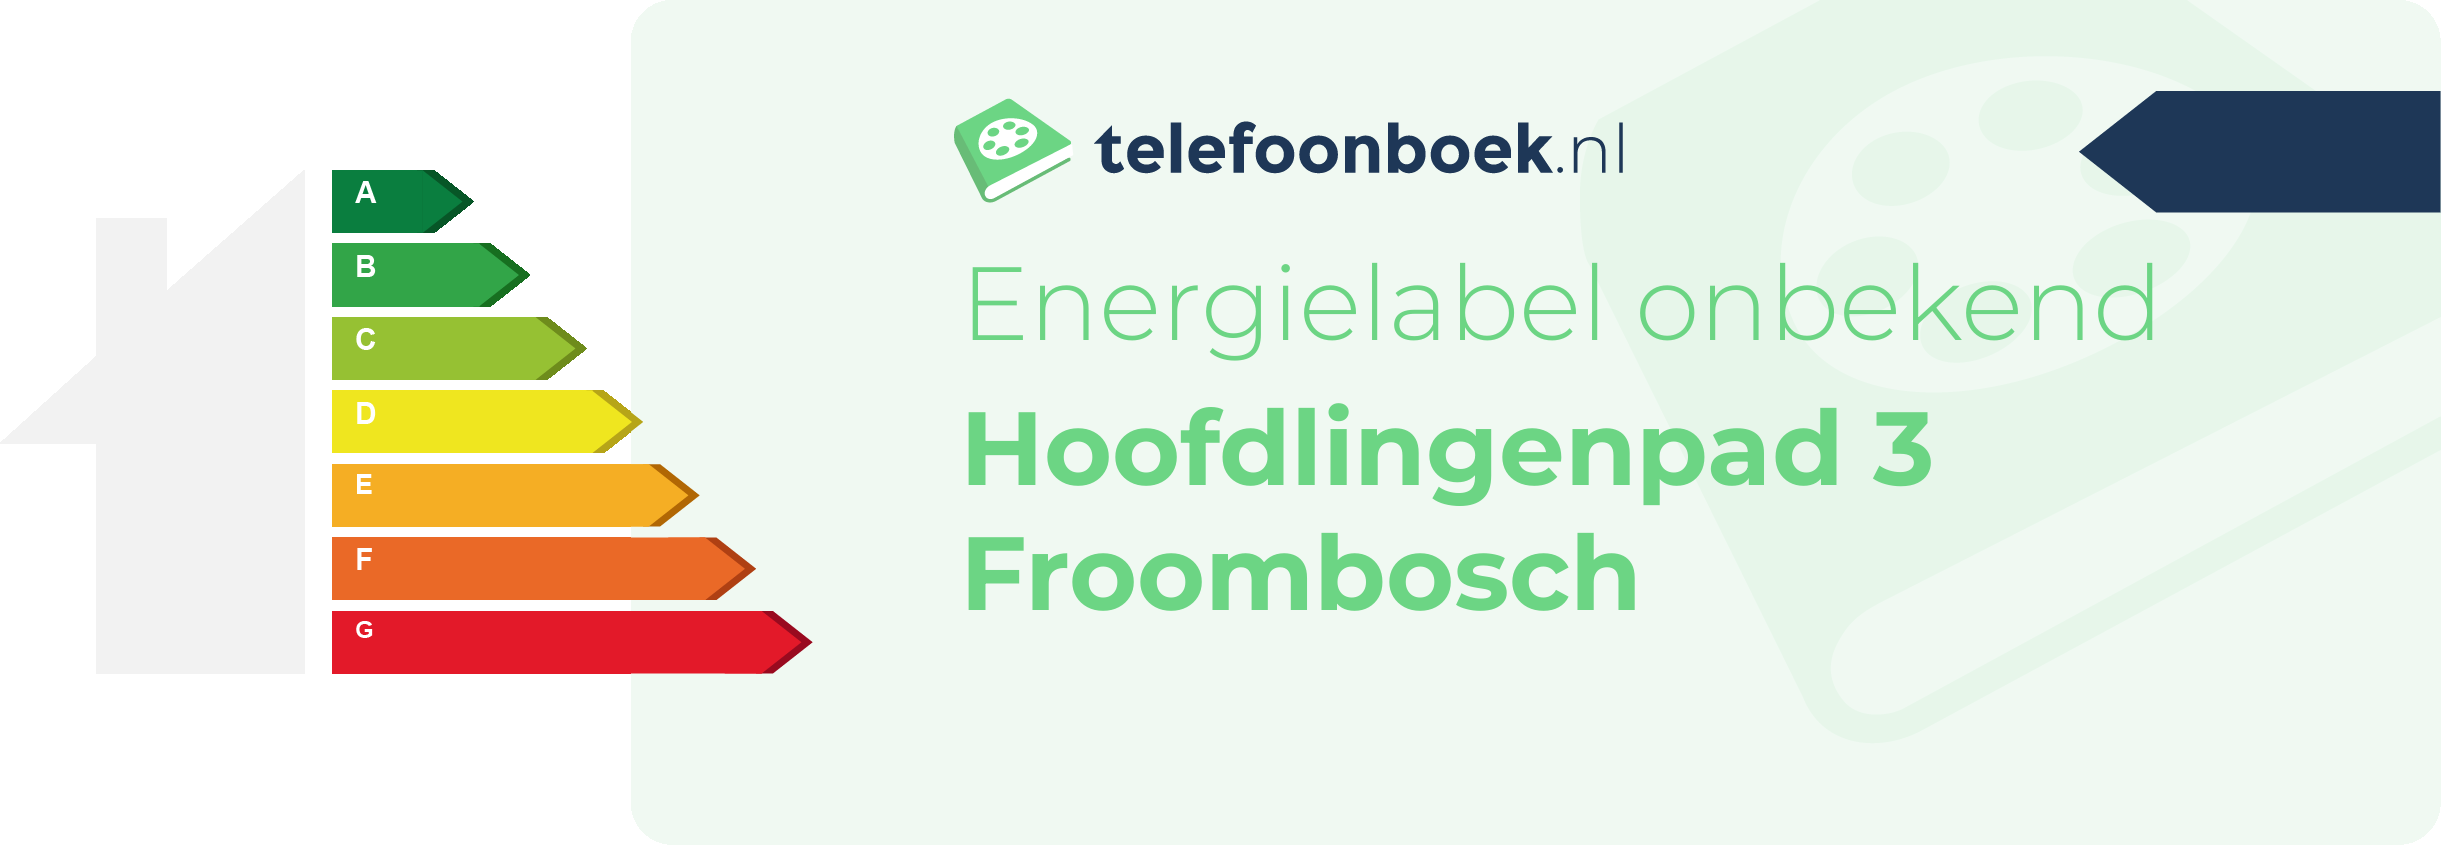 Energielabel Hoofdlingenpad 3 Froombosch